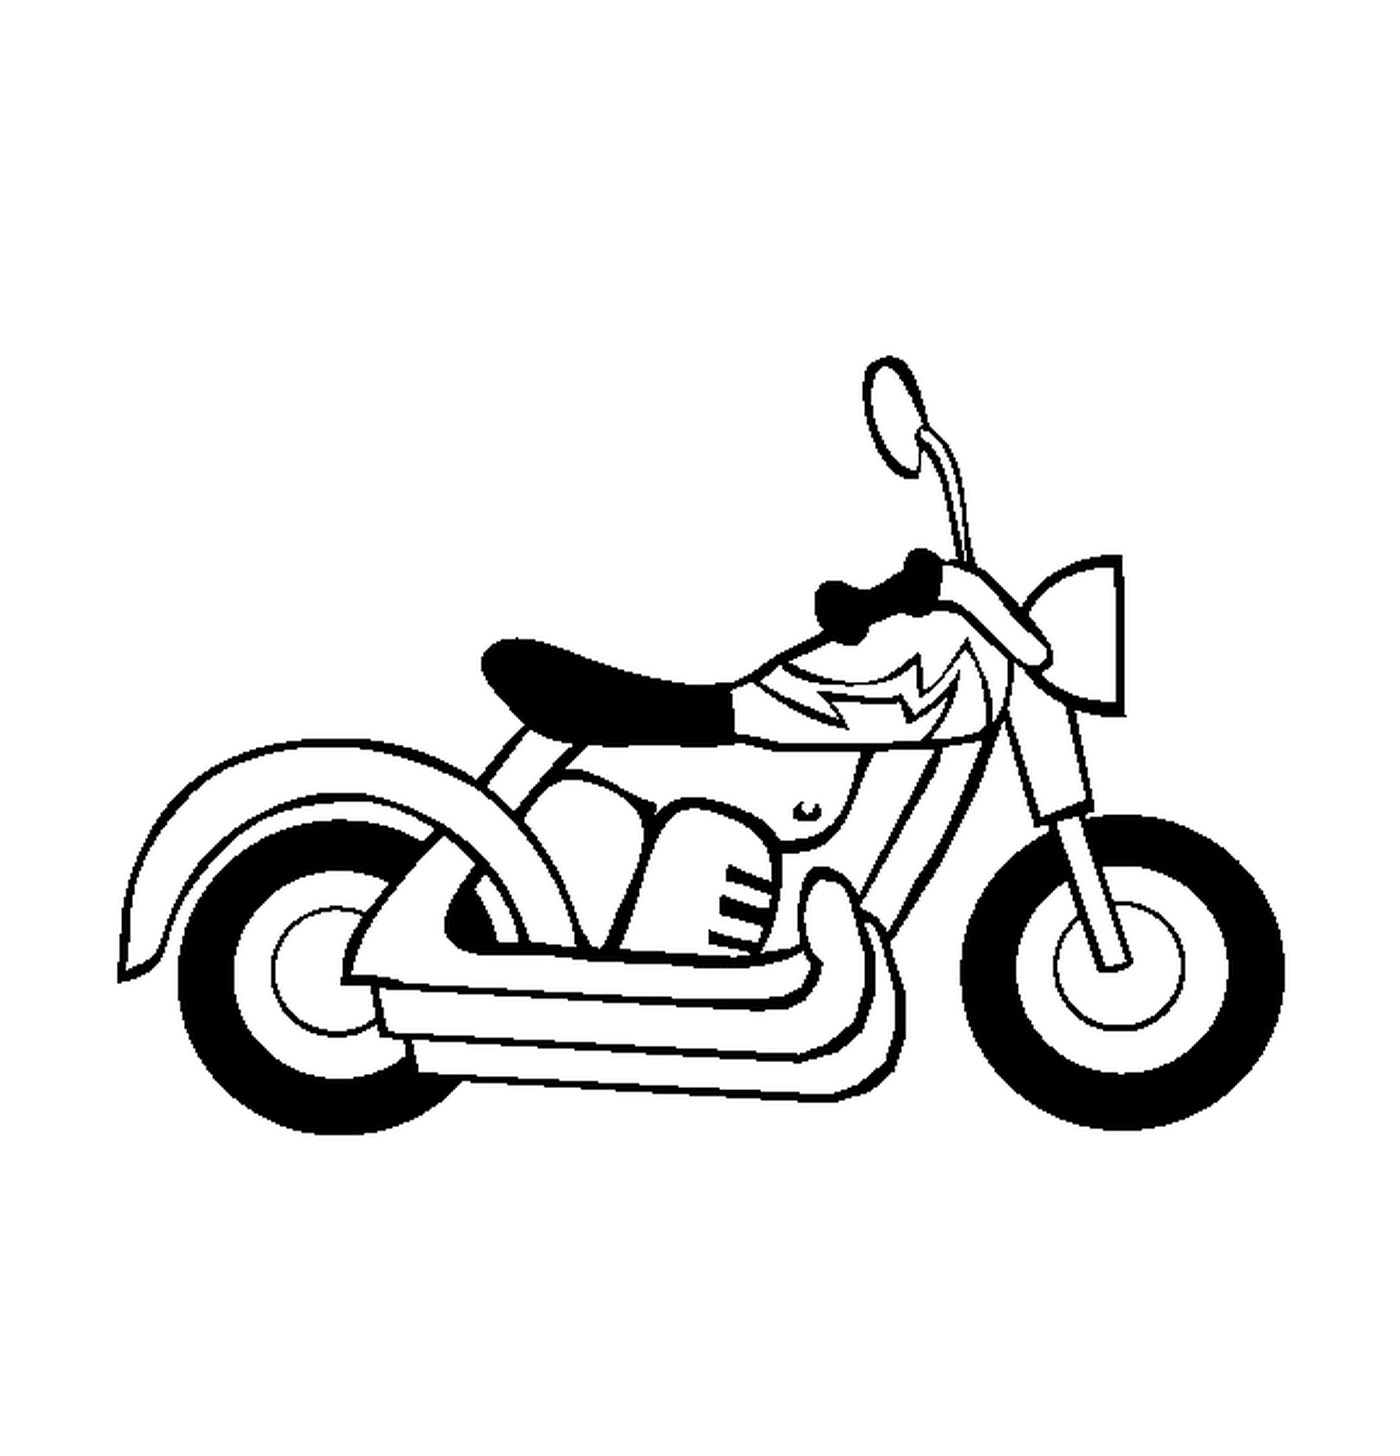  Motocicleta fácil y sencilla 